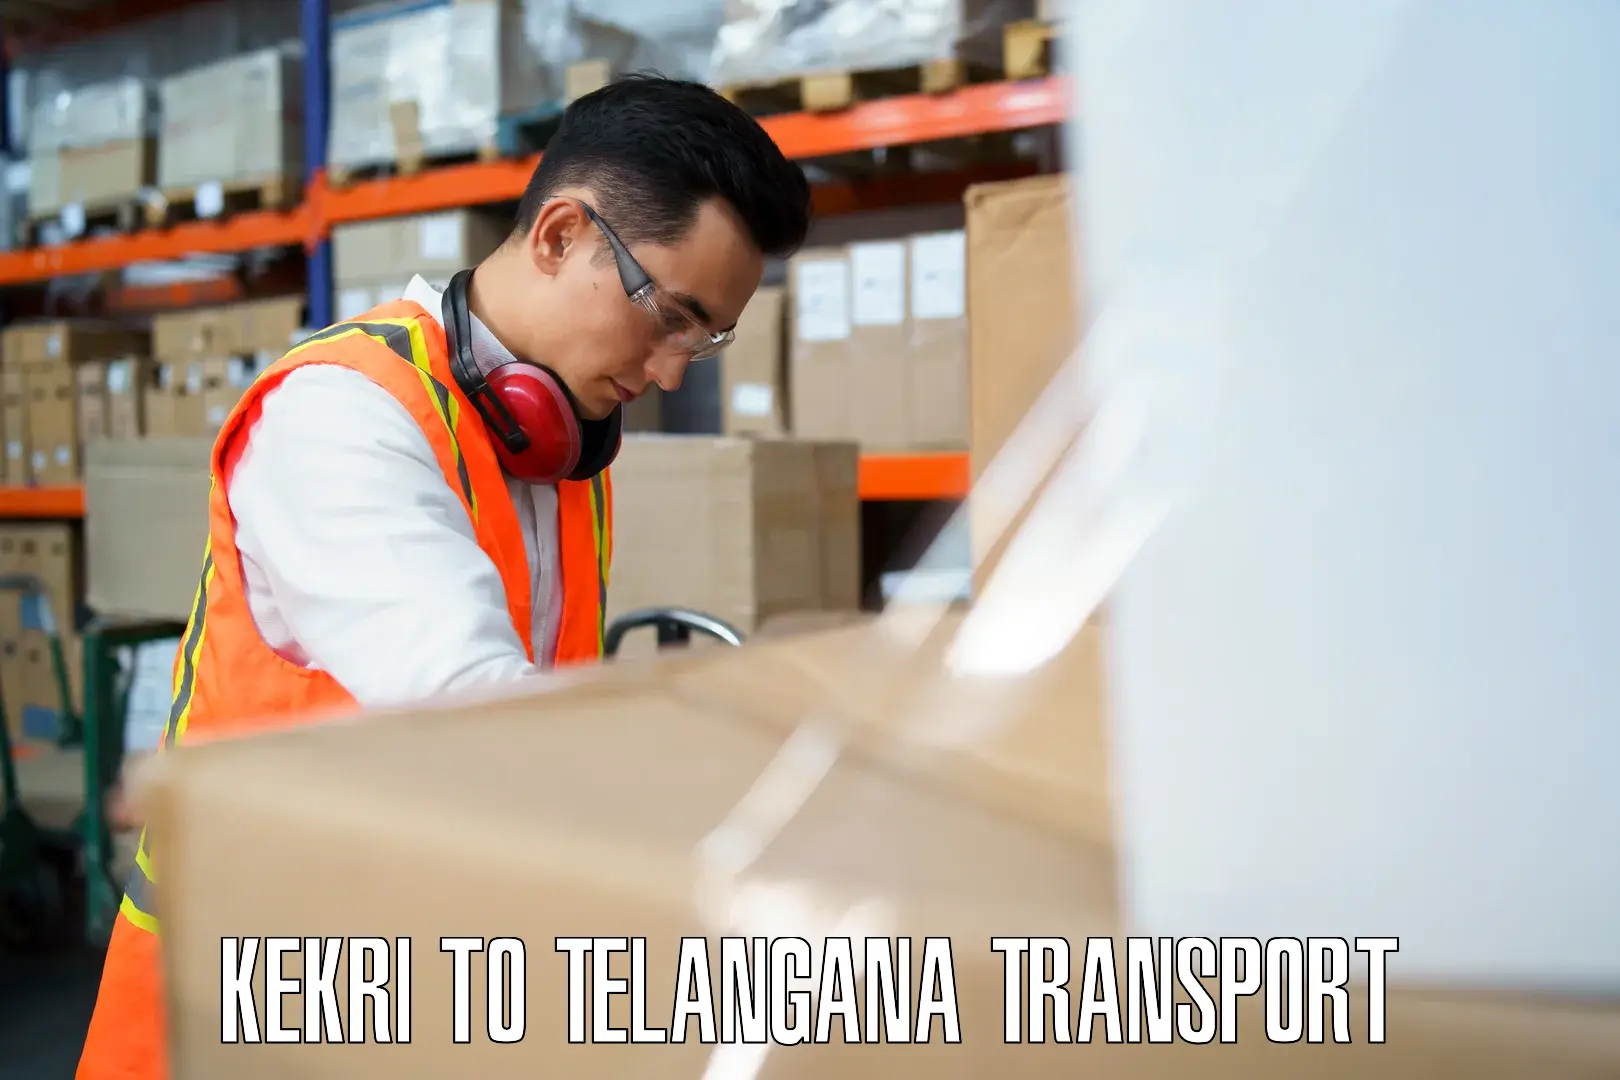 Logistics transportation services Kekri to Nalgonda